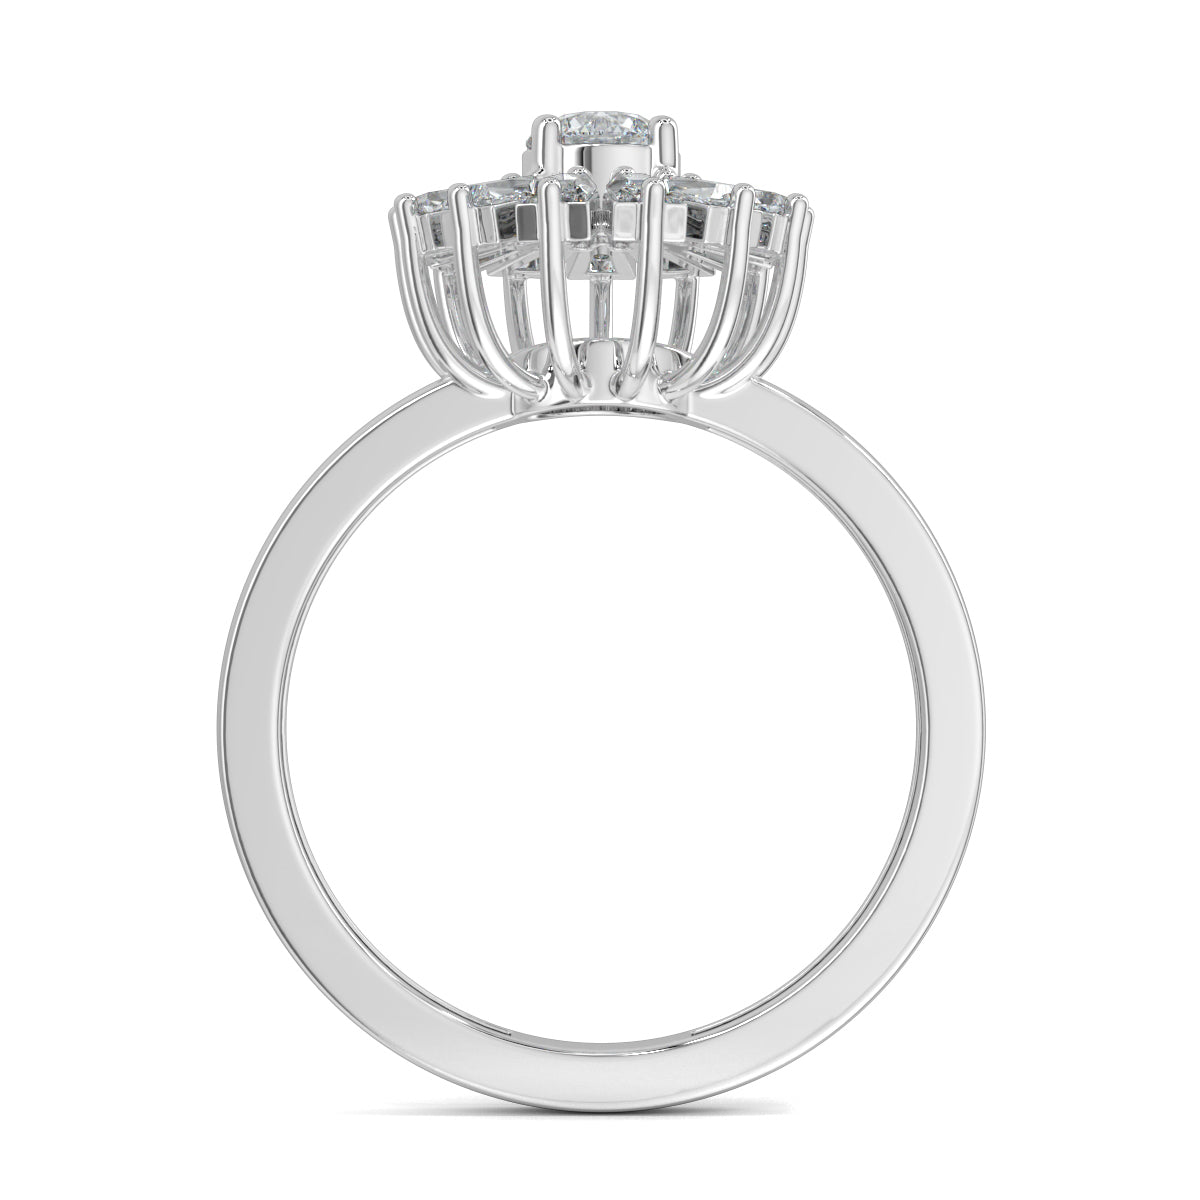 White Gold, Diamond Ring, Natural diamond ring, Lab-grown diamond ring, enchantia floral ring, round diamond ring, baguette diamond ring, floral diamond ring, classic diamond ring, elegant diamond ring, versatile diamond ring